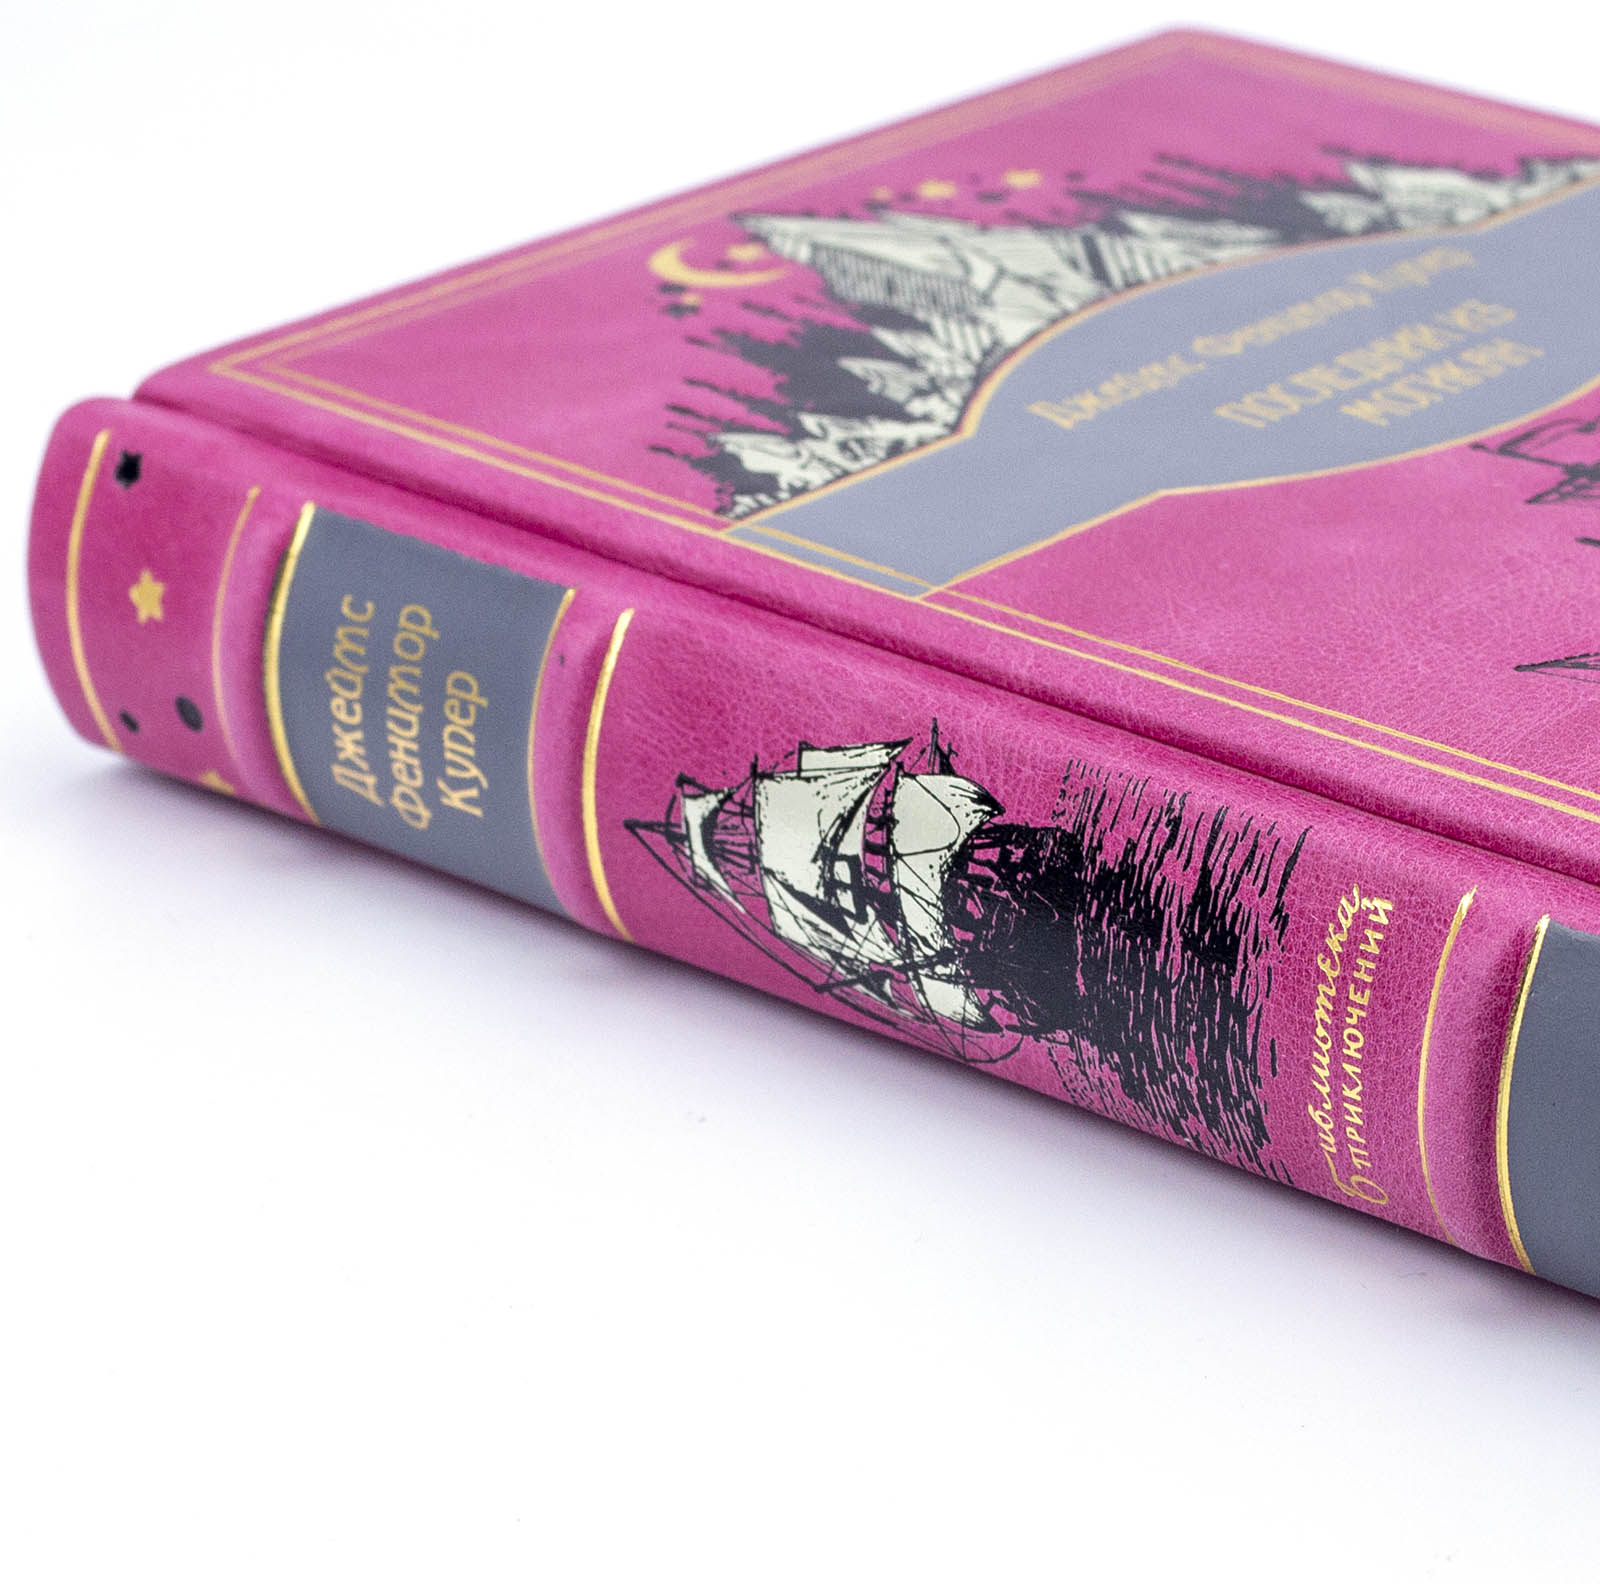 Джеймс Фенимор Купер «Последний из могикан» подарочная книга в кожаном переплете